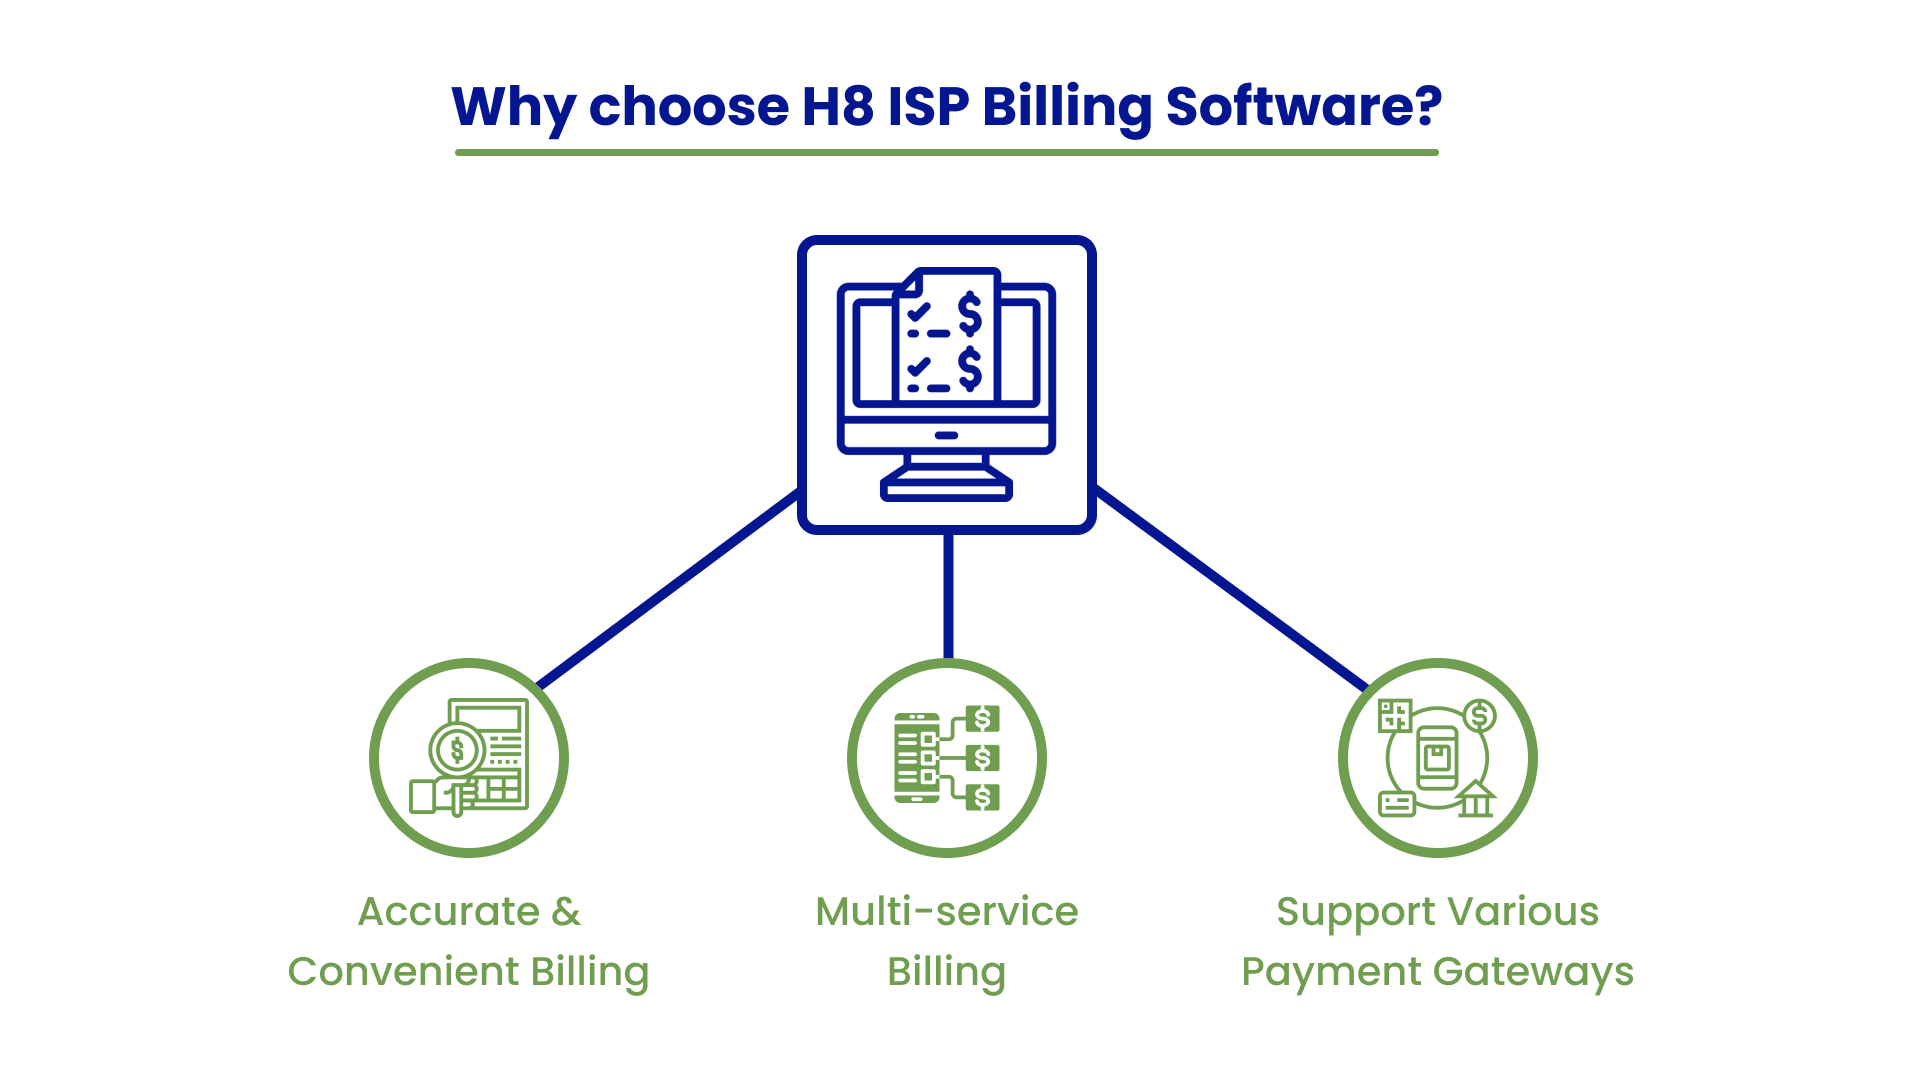 H8 ISP Billing